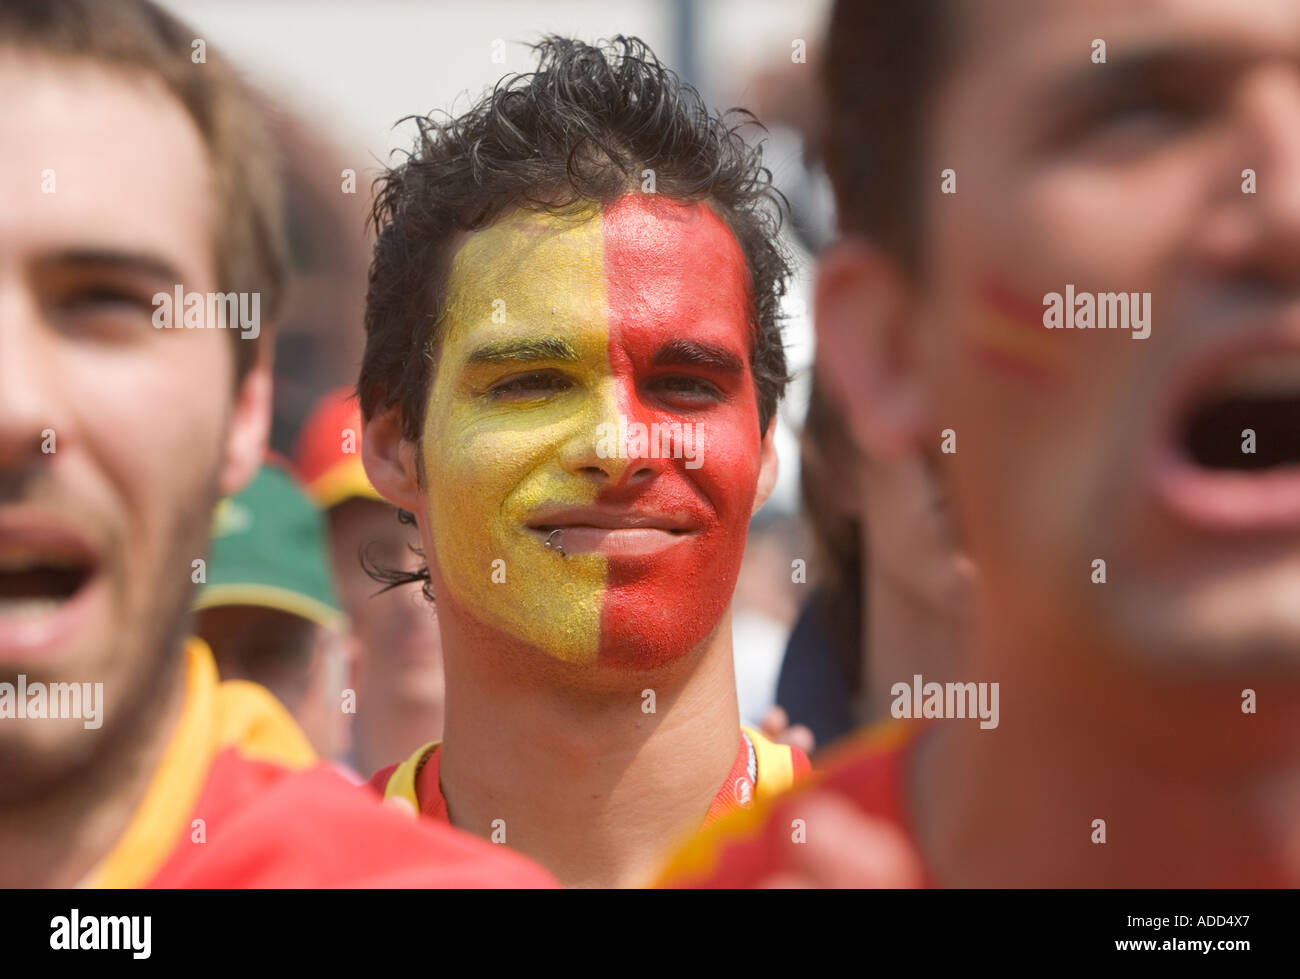 Spanische Fußball-Fans singen auf einem public-Viewing-event Stockfoto